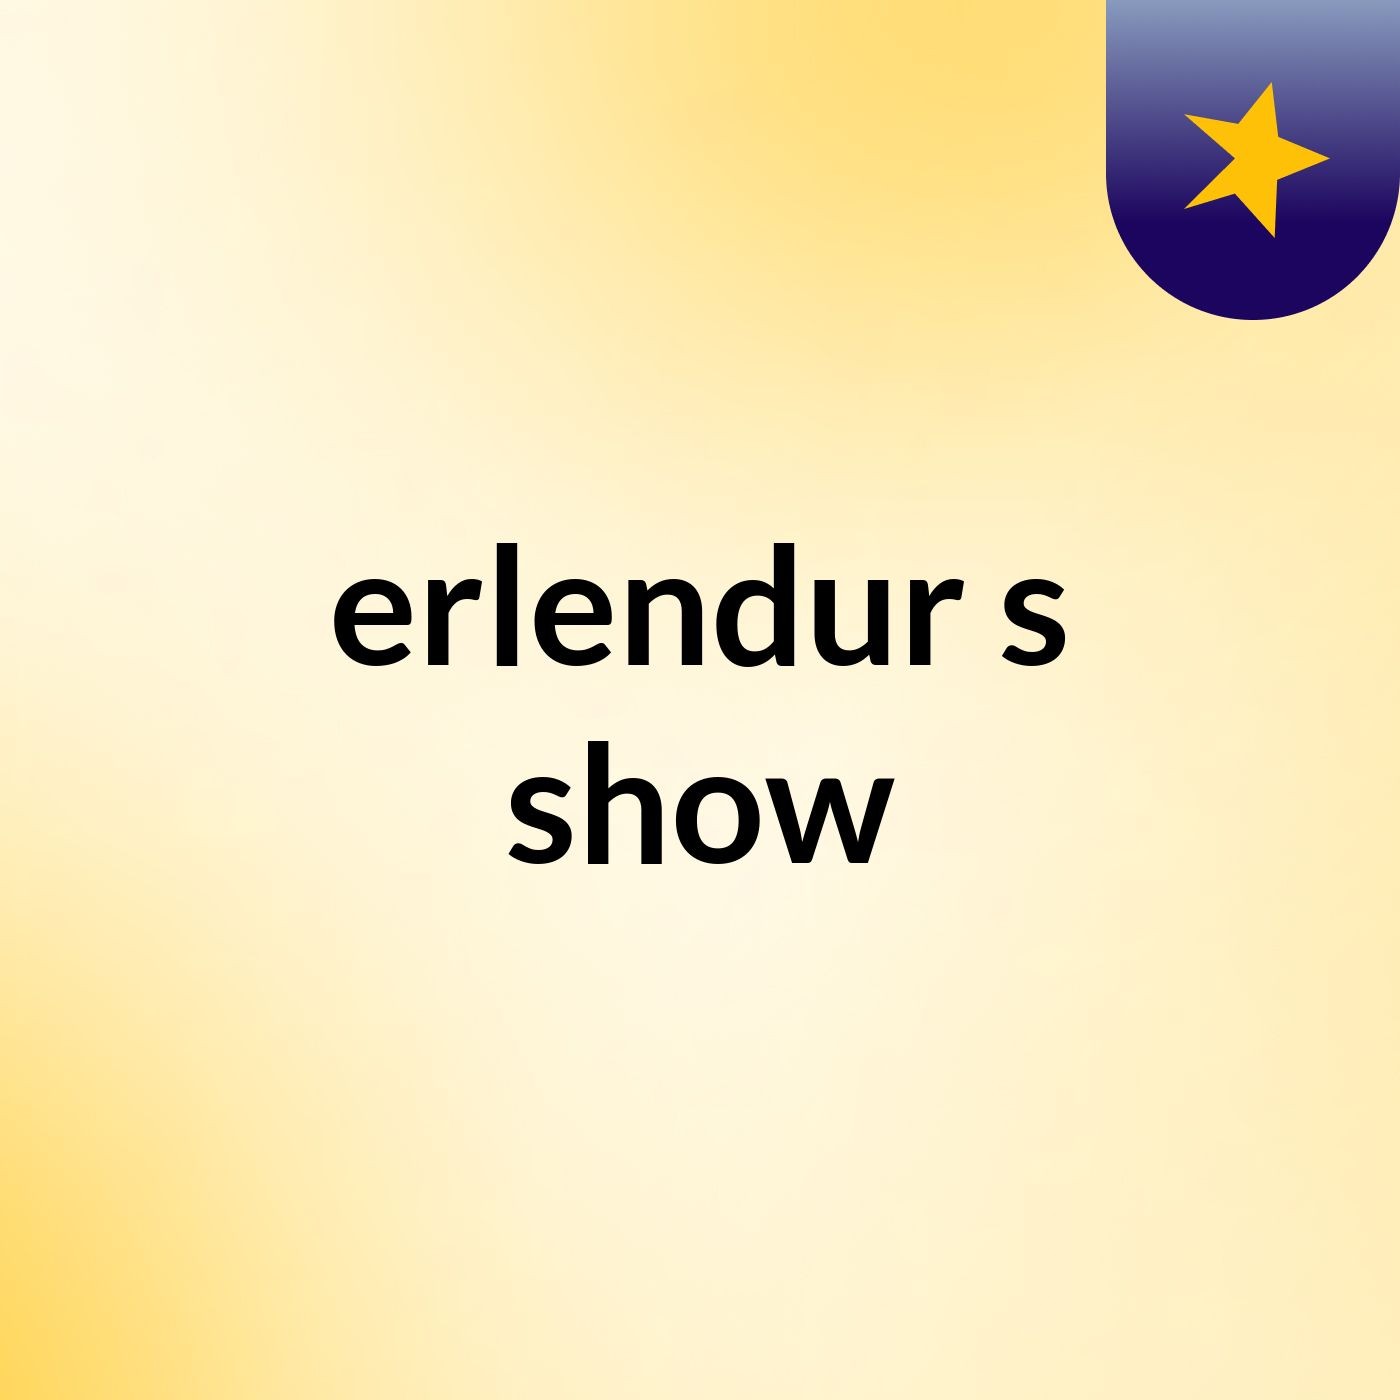 erlendur's show